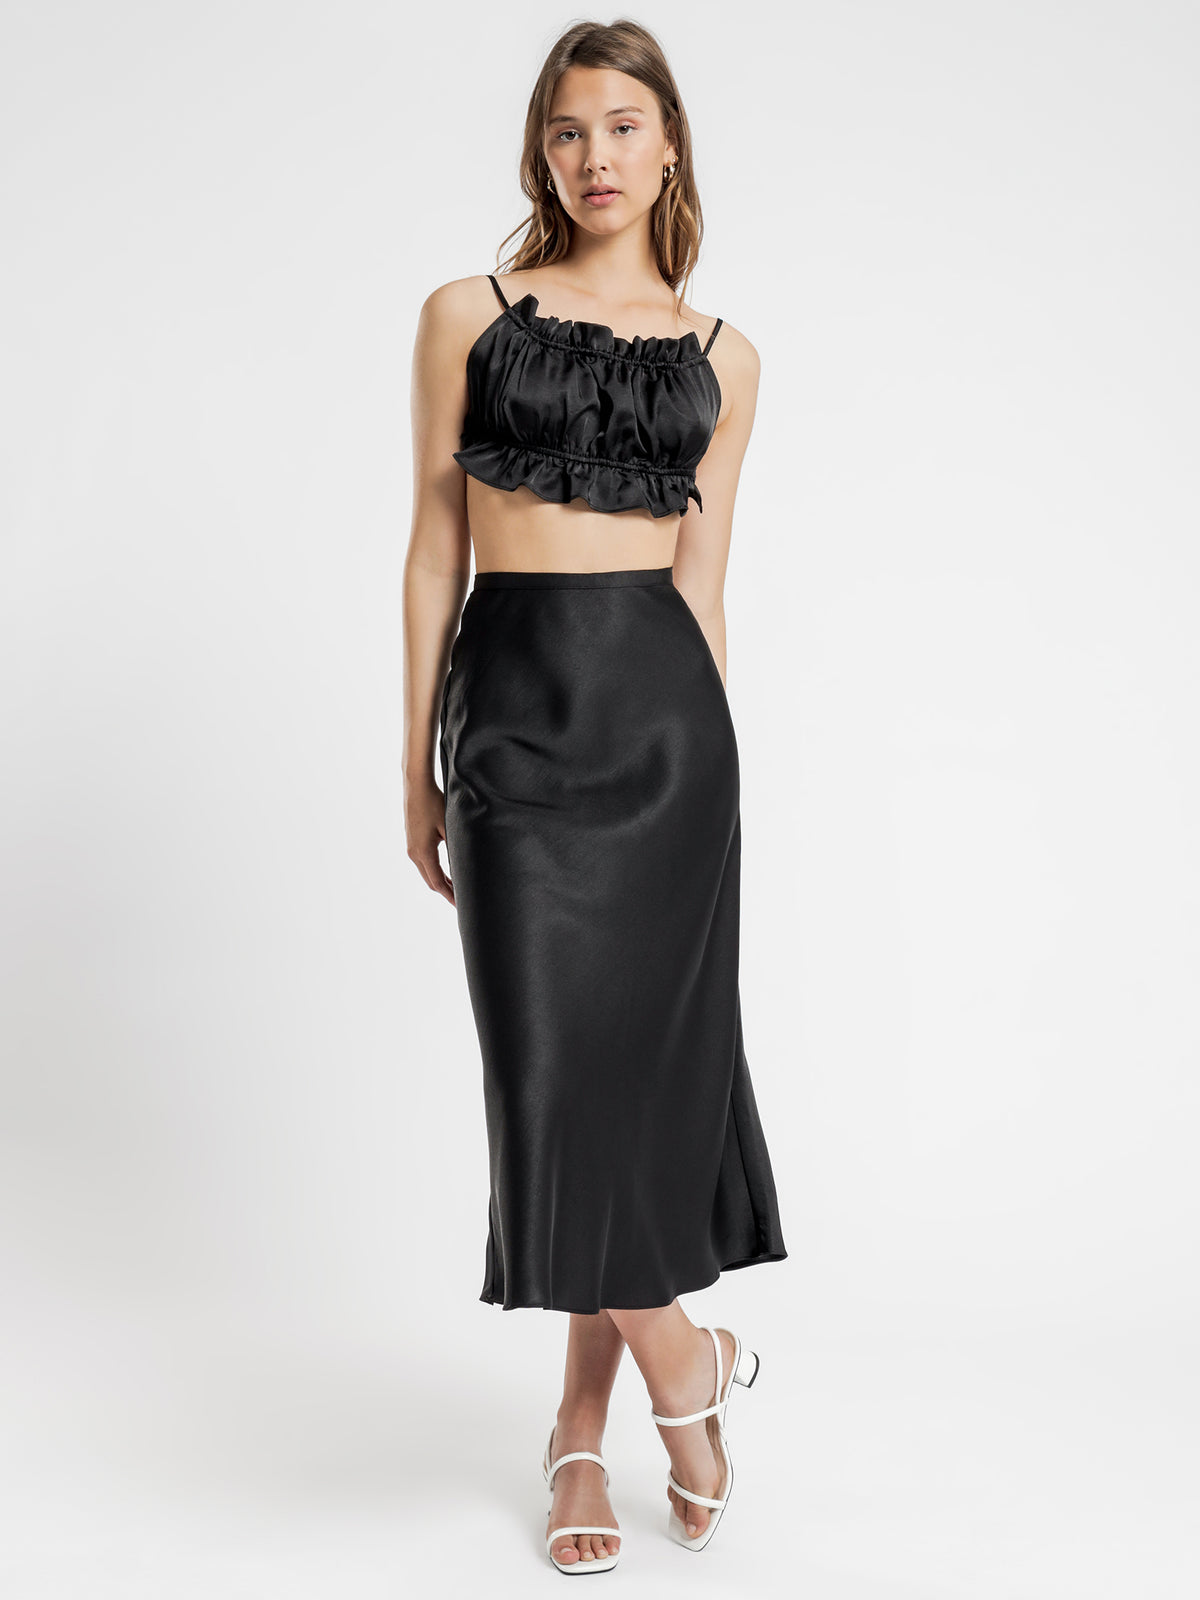 Leonie Satin Midi Skirt in Black